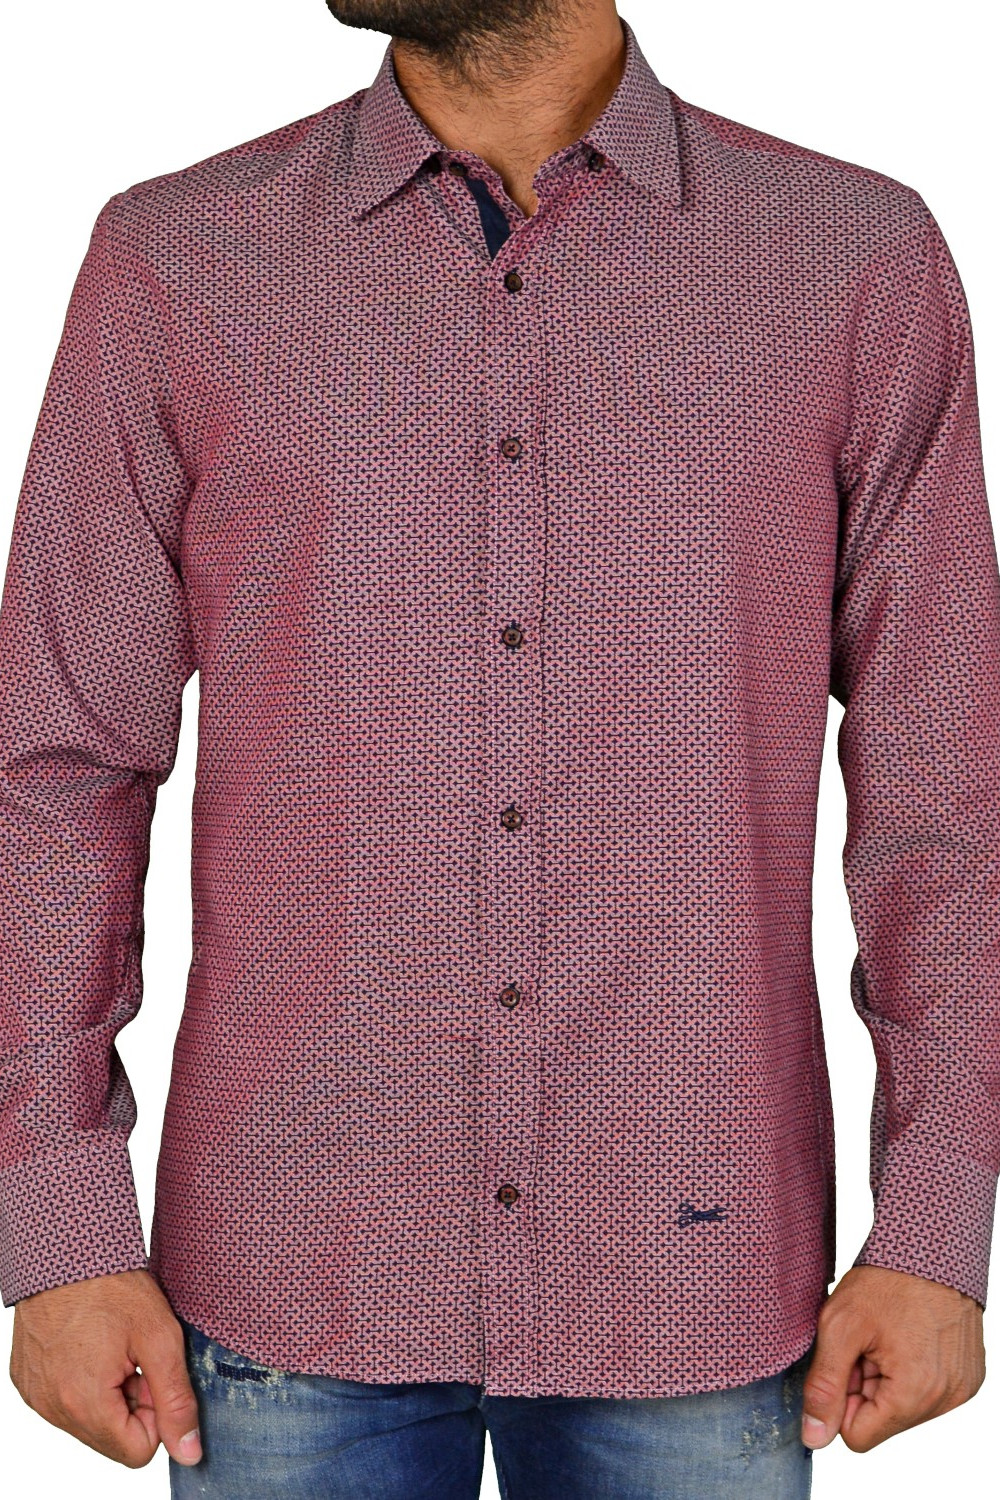 Ανδρικό πουκάμισο με γεωμετρικό μοτίβο μπορντό Ben tailor 240516